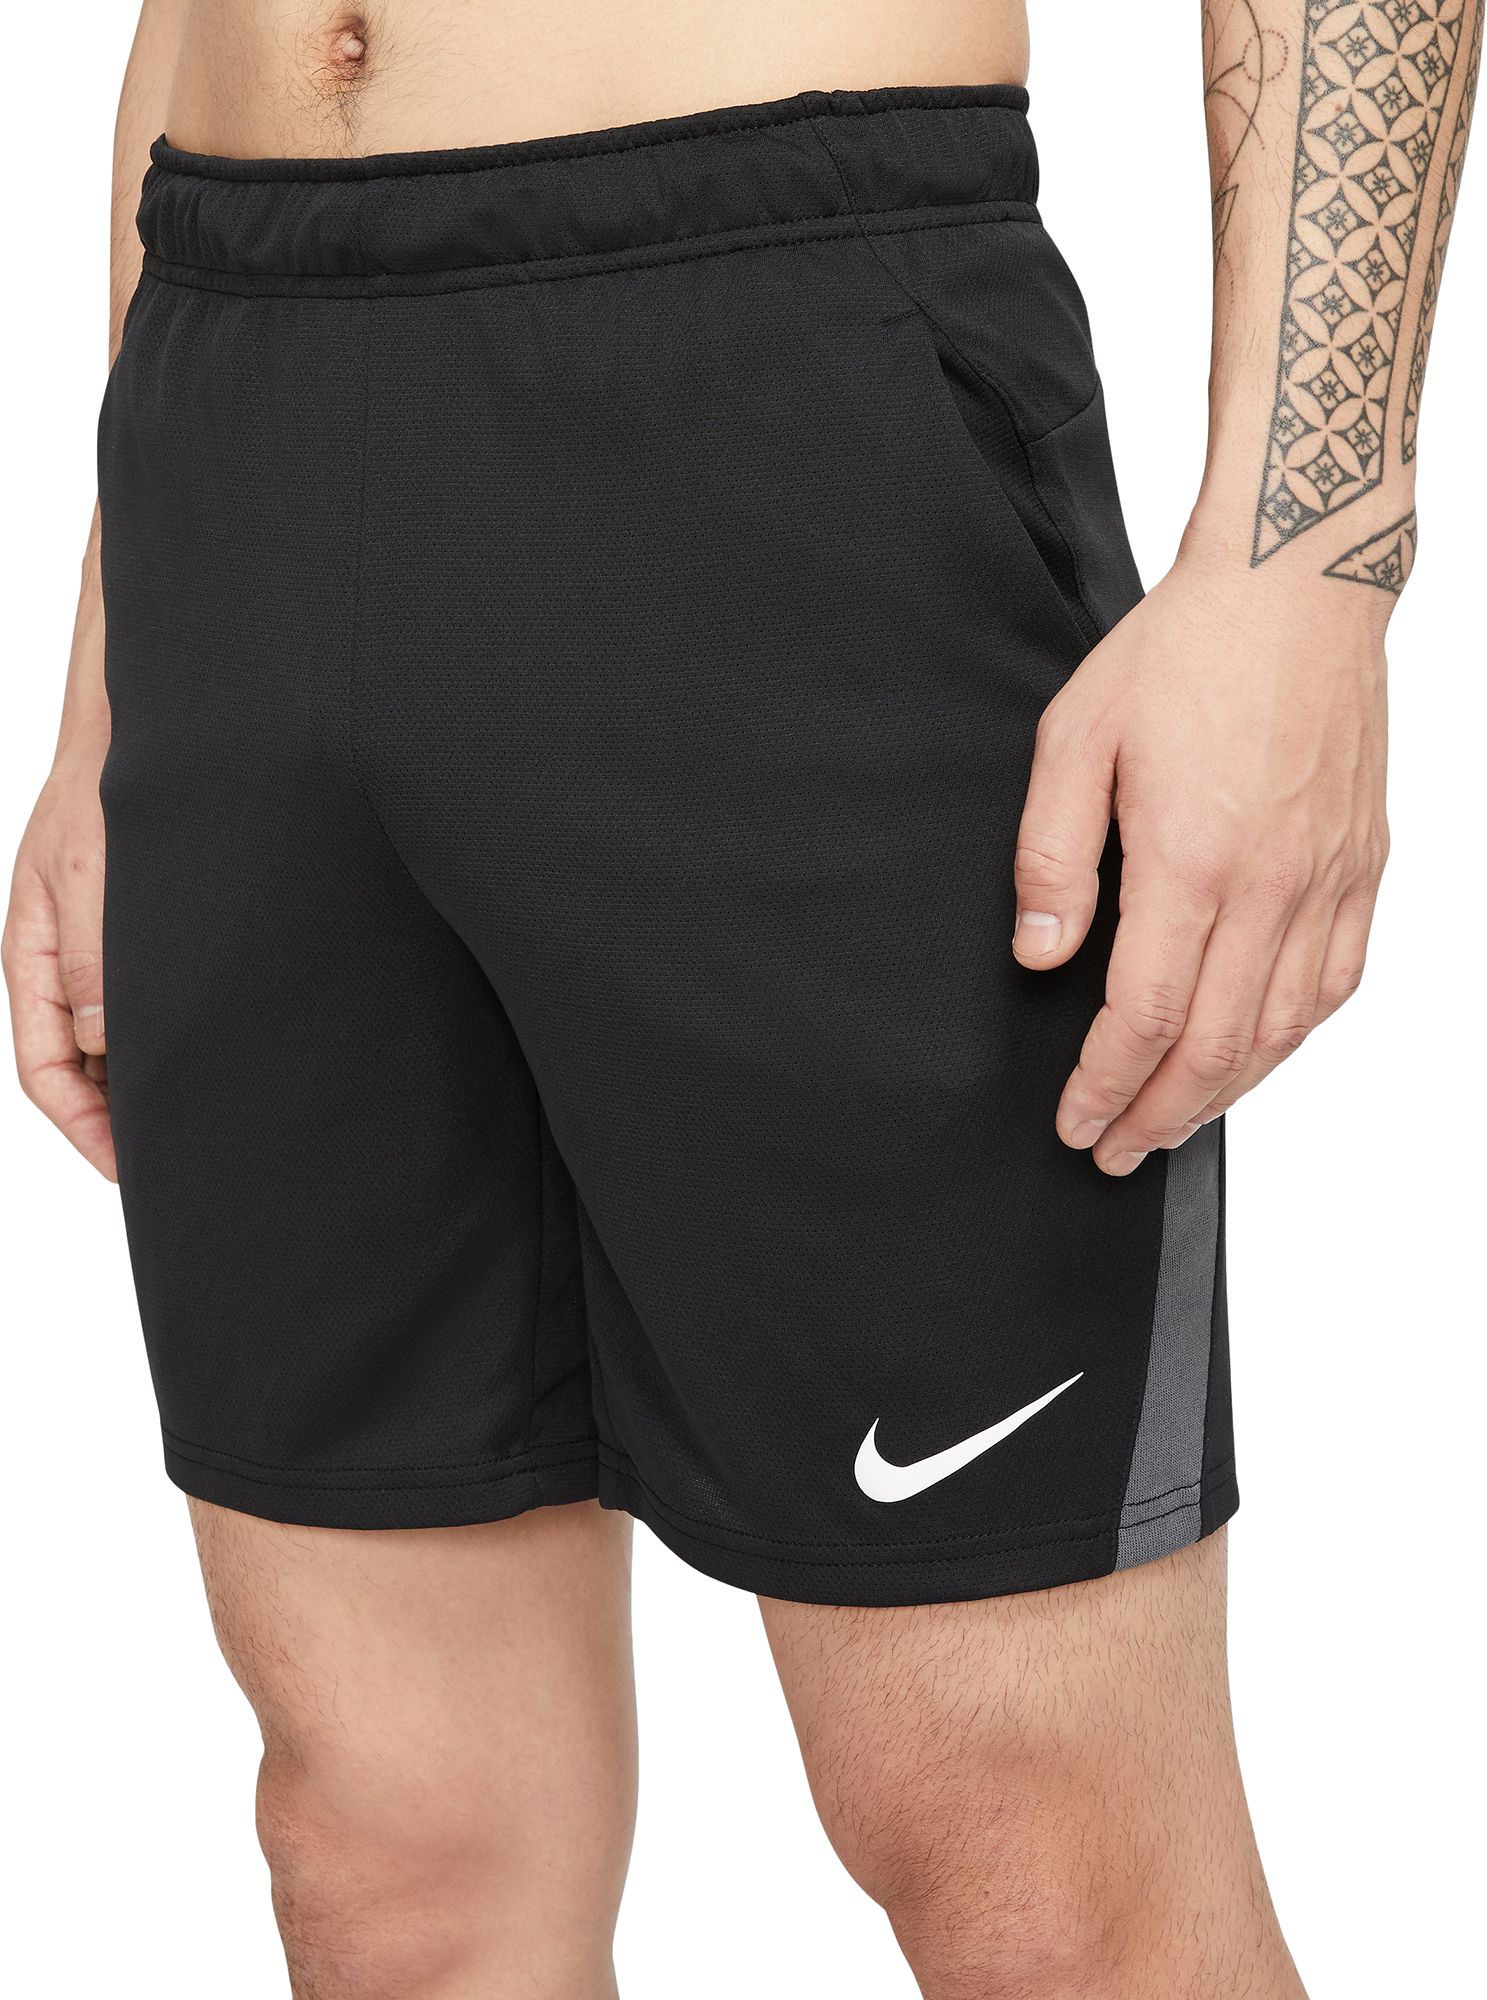 nike men's dry allover print 4.0 training shorts